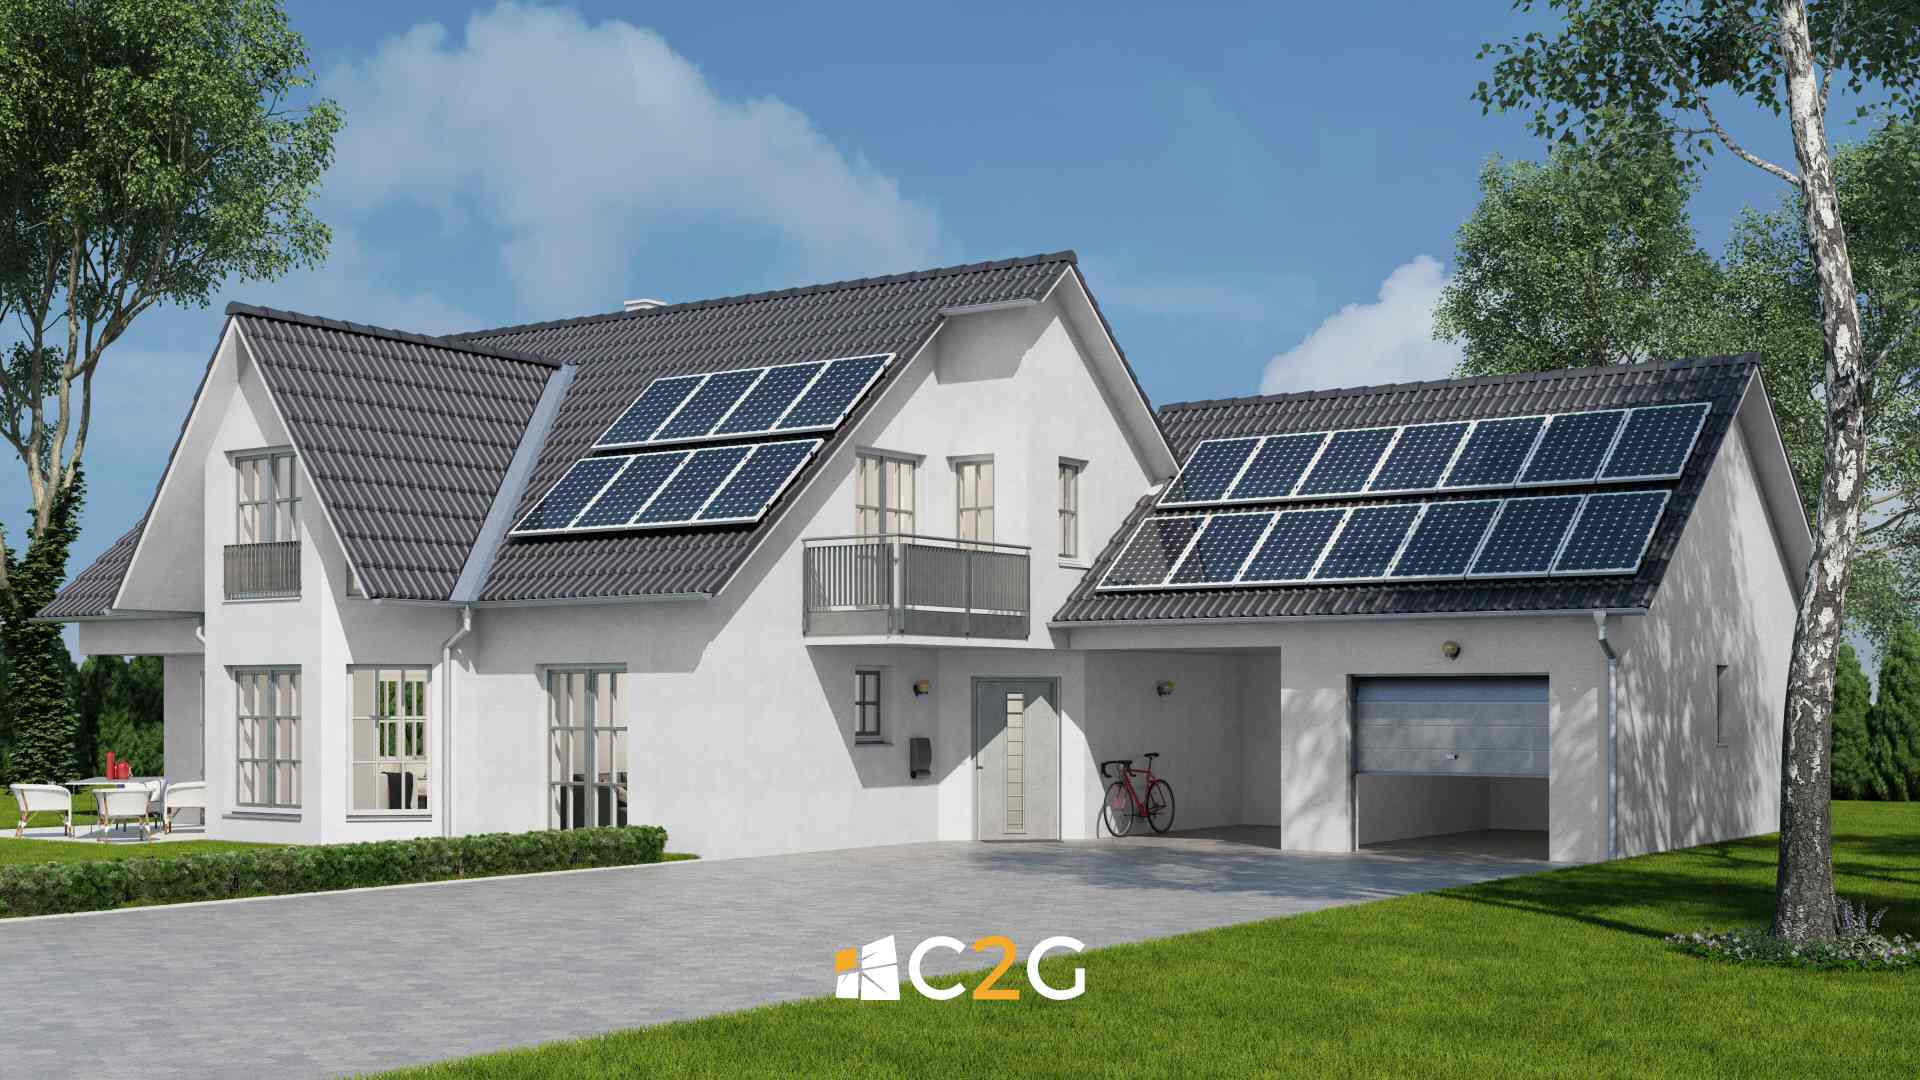 Quanto costa un impianto fotovoltaico a Lecco, Bergamo, Monza e Brianza - C2G Solar